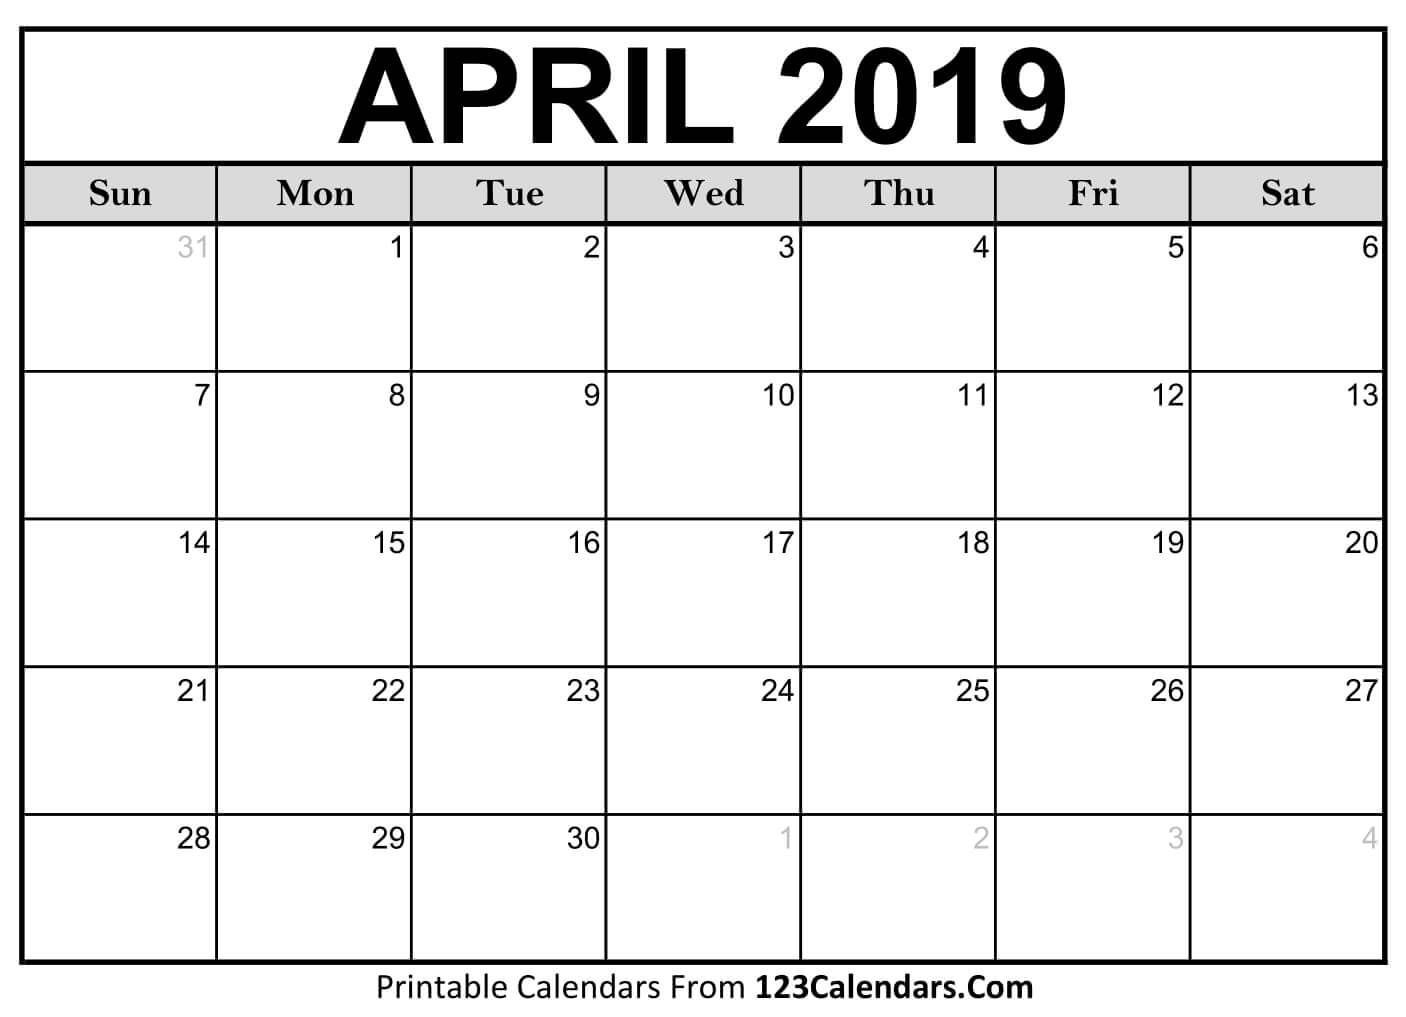 2020 April Calendar - Free Printable Template Download